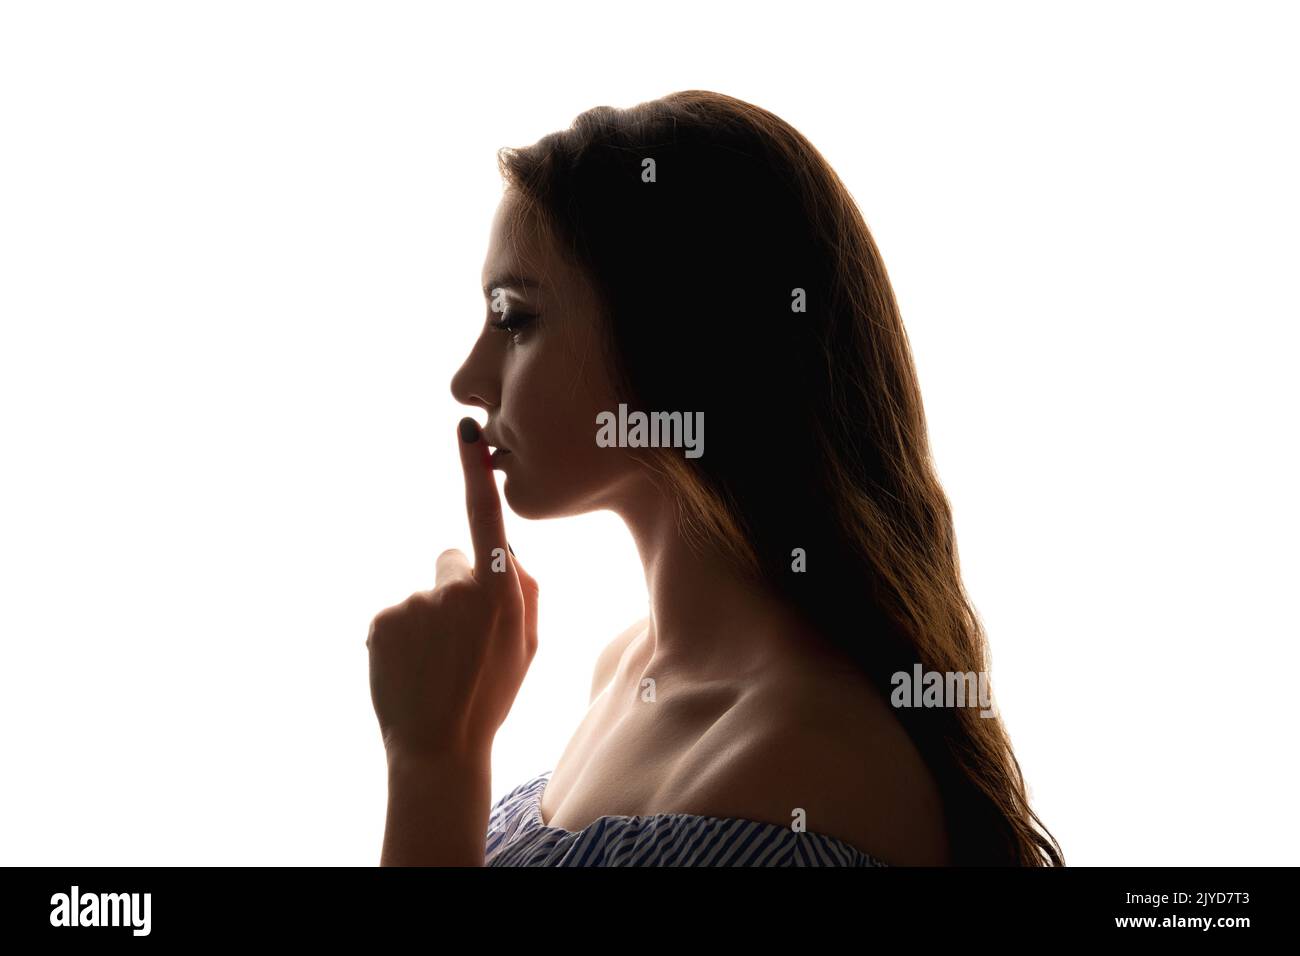 shush gesture female secret woman shhh finger lips Stock Photo